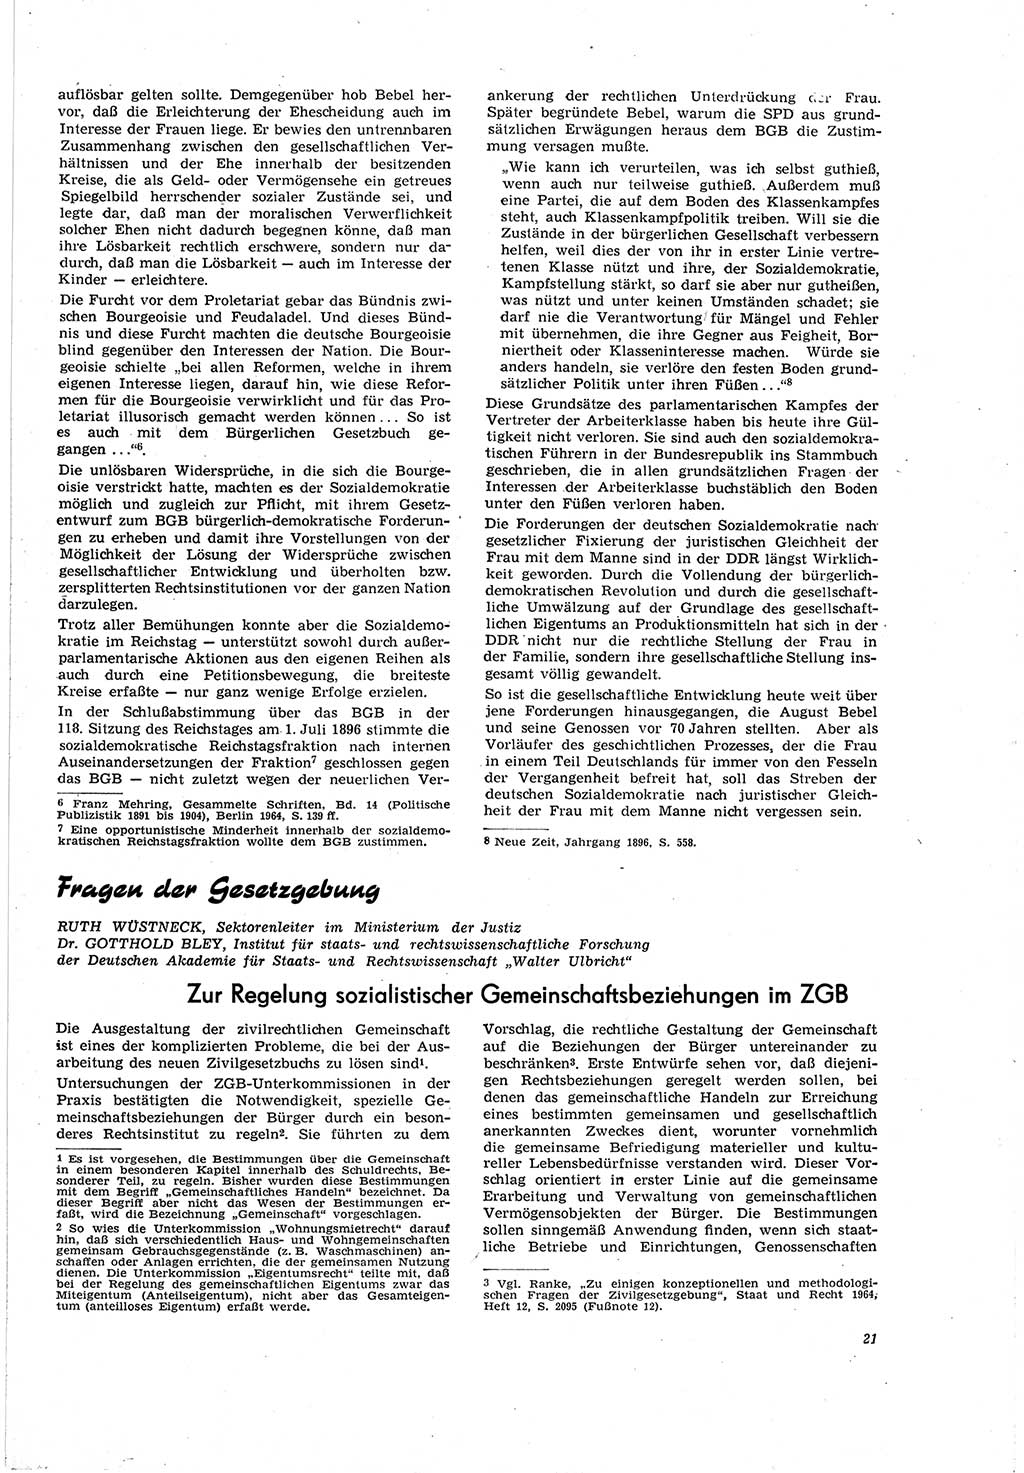 Neue Justiz (NJ), Zeitschrift für Recht und Rechtswissenschaft [Deutsche Demokratische Republik (DDR)], 20. Jahrgang 1966, Seite 21 (NJ DDR 1966, S. 21)